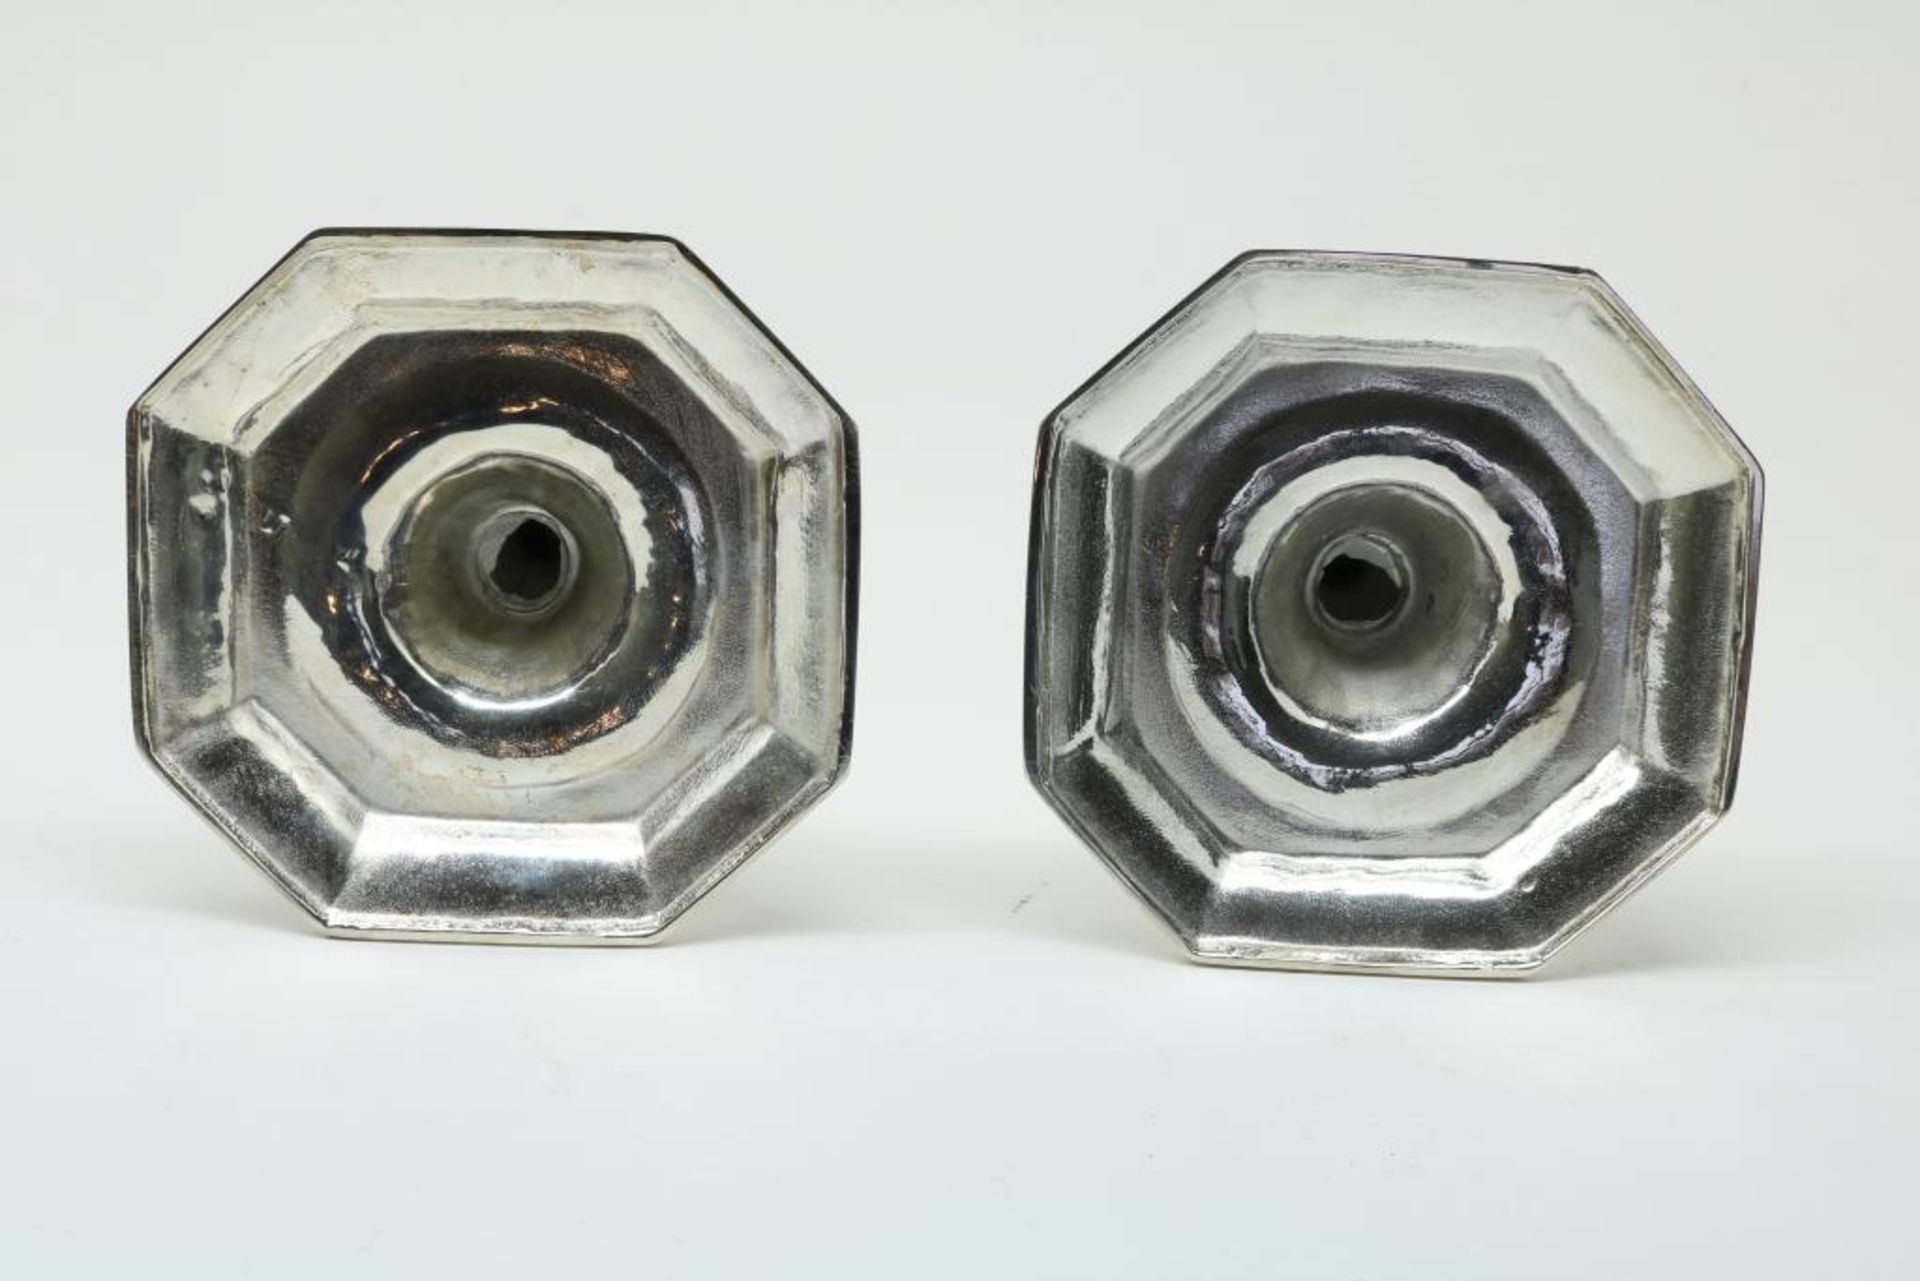 Paar zilveren kandelaars, regence stijl - Bild 2 aus 3